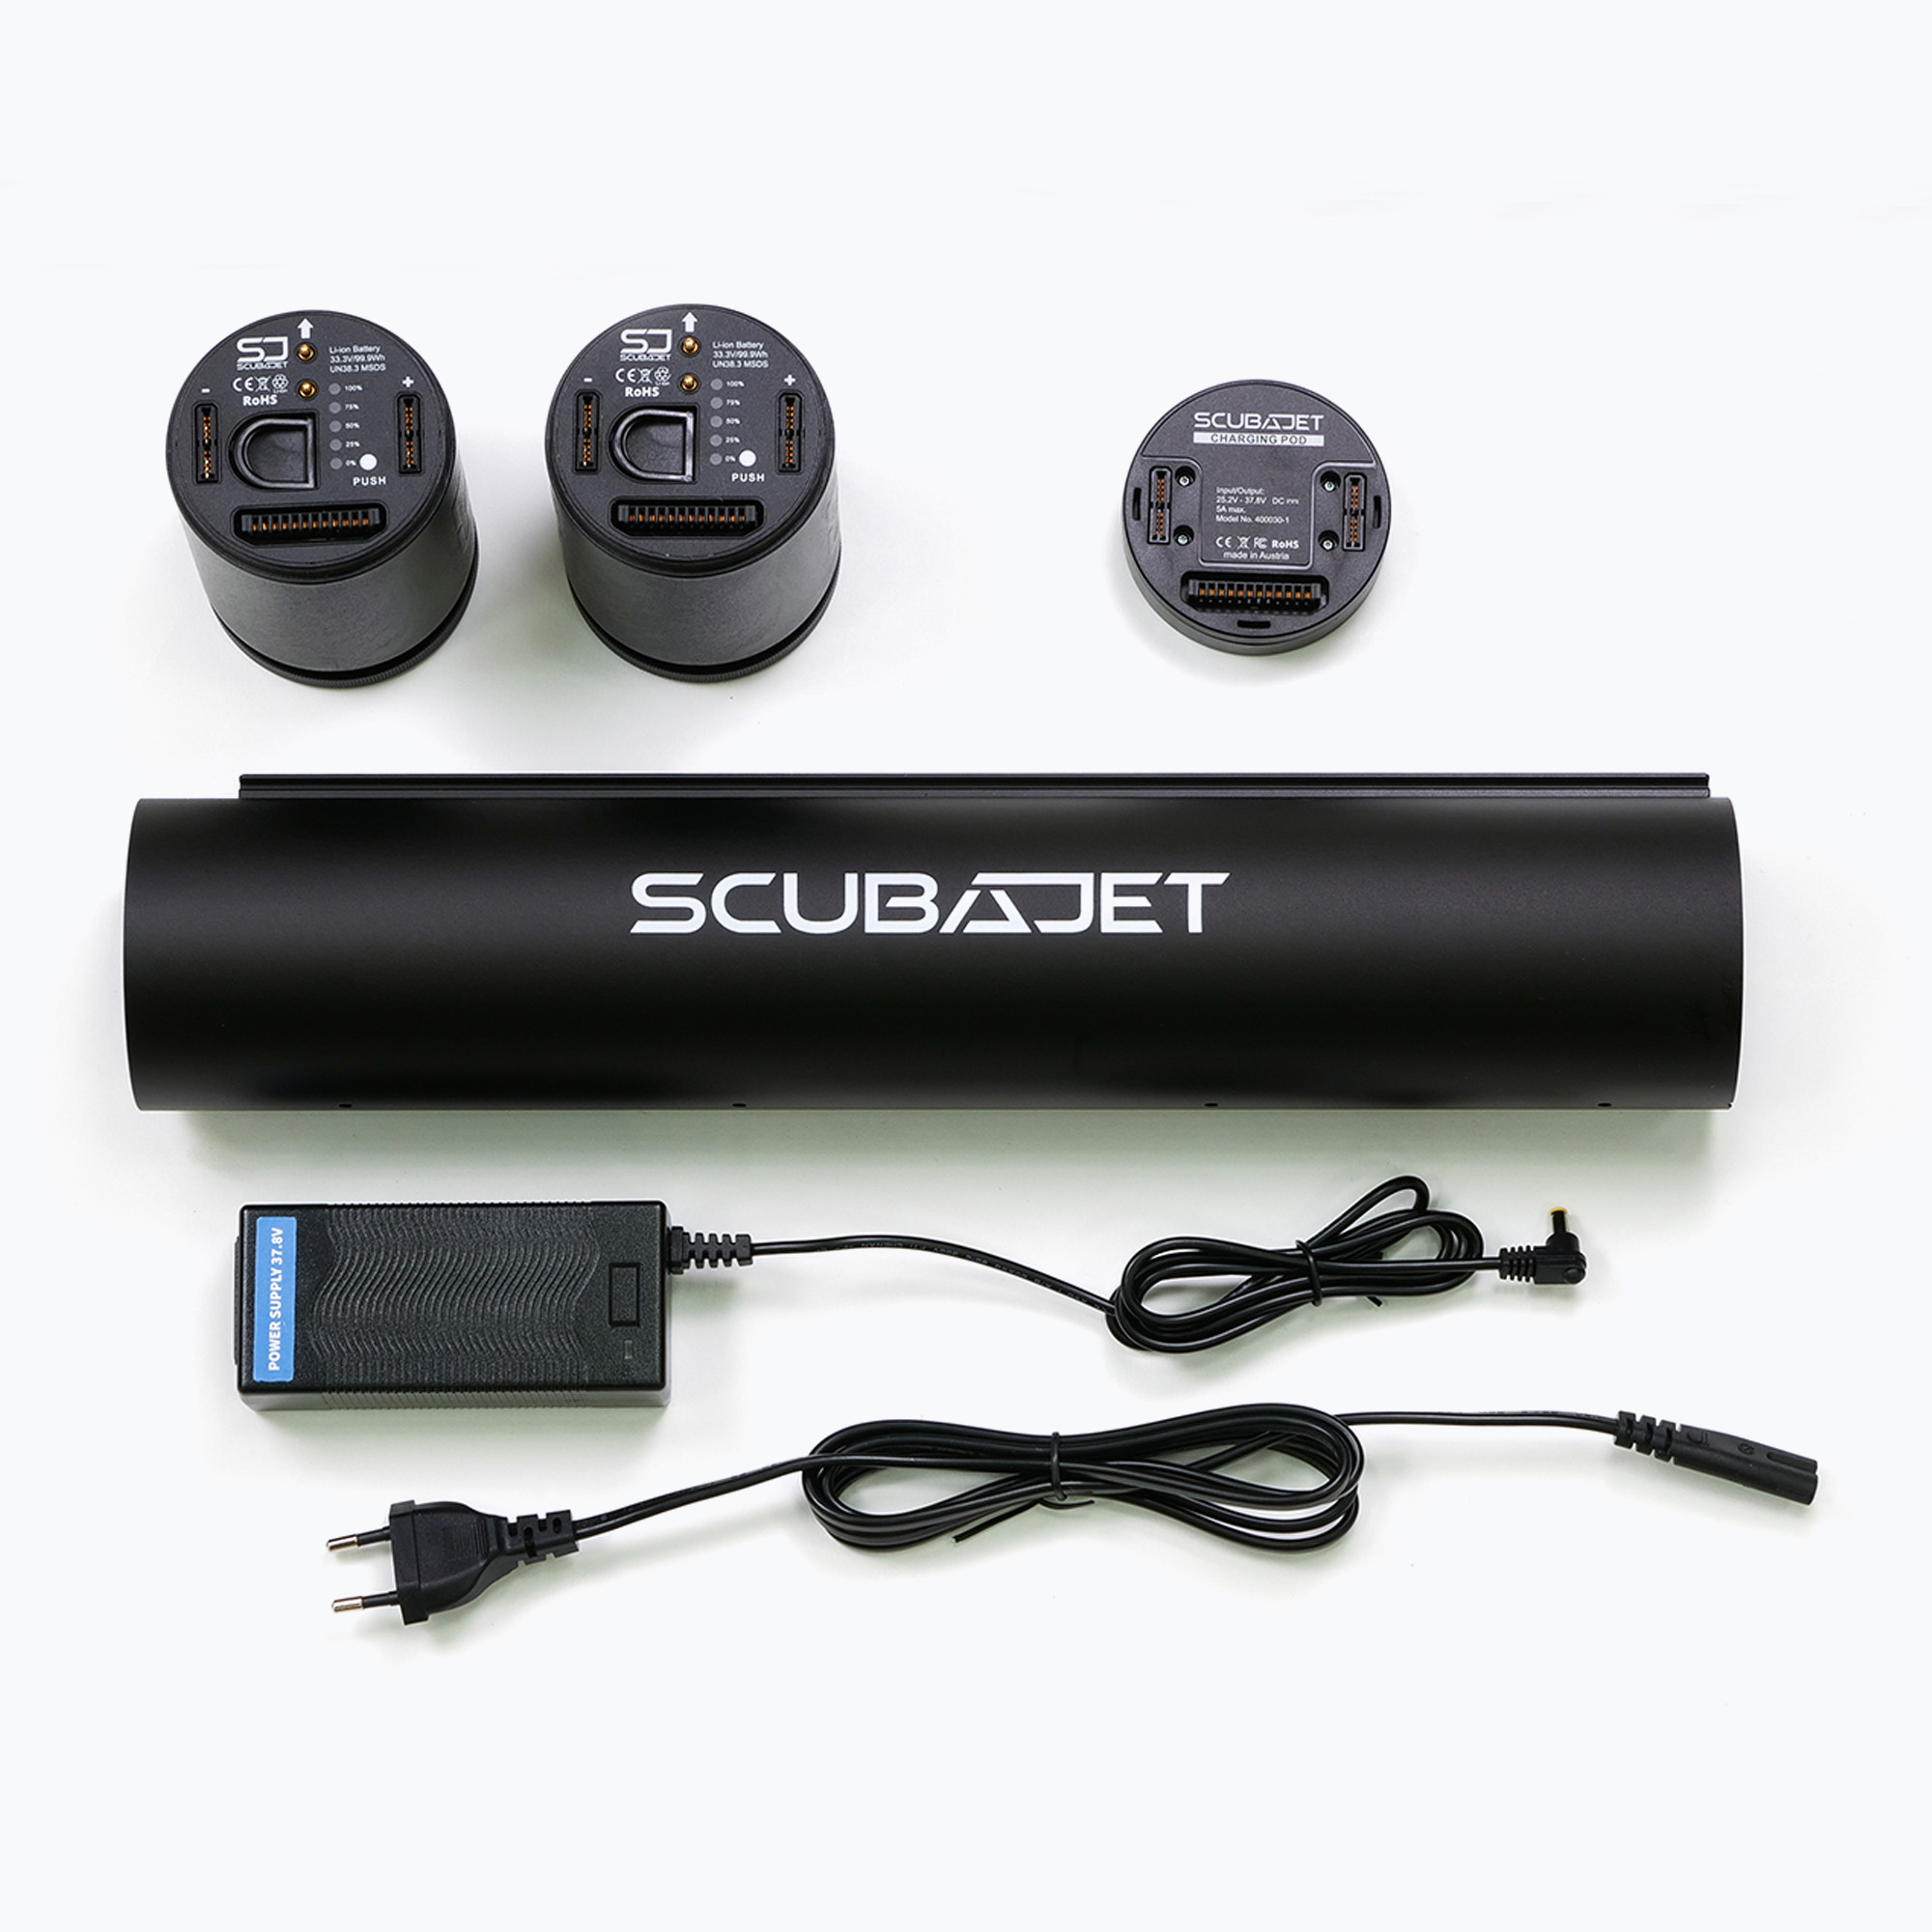 Zdjęcia - Akcesorium do nurkowania Zestaw baterii z korpusem SCUBAJET Double Your Range - Pro XR black | WYSY